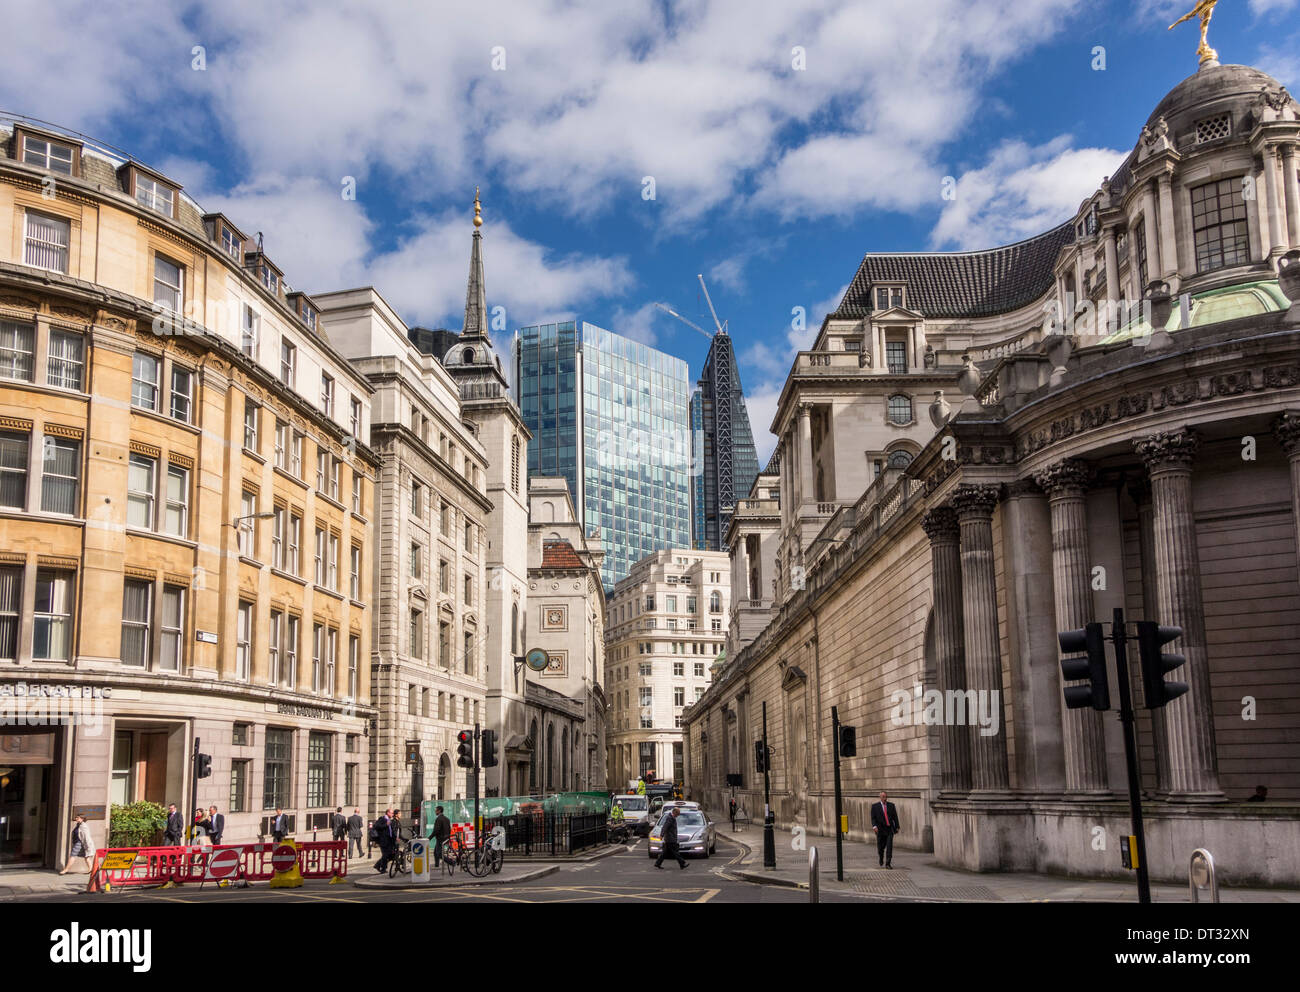 La giustapposizione di vecchia e nuova architettura nella città di Londra, Regno Unito Foto Stock